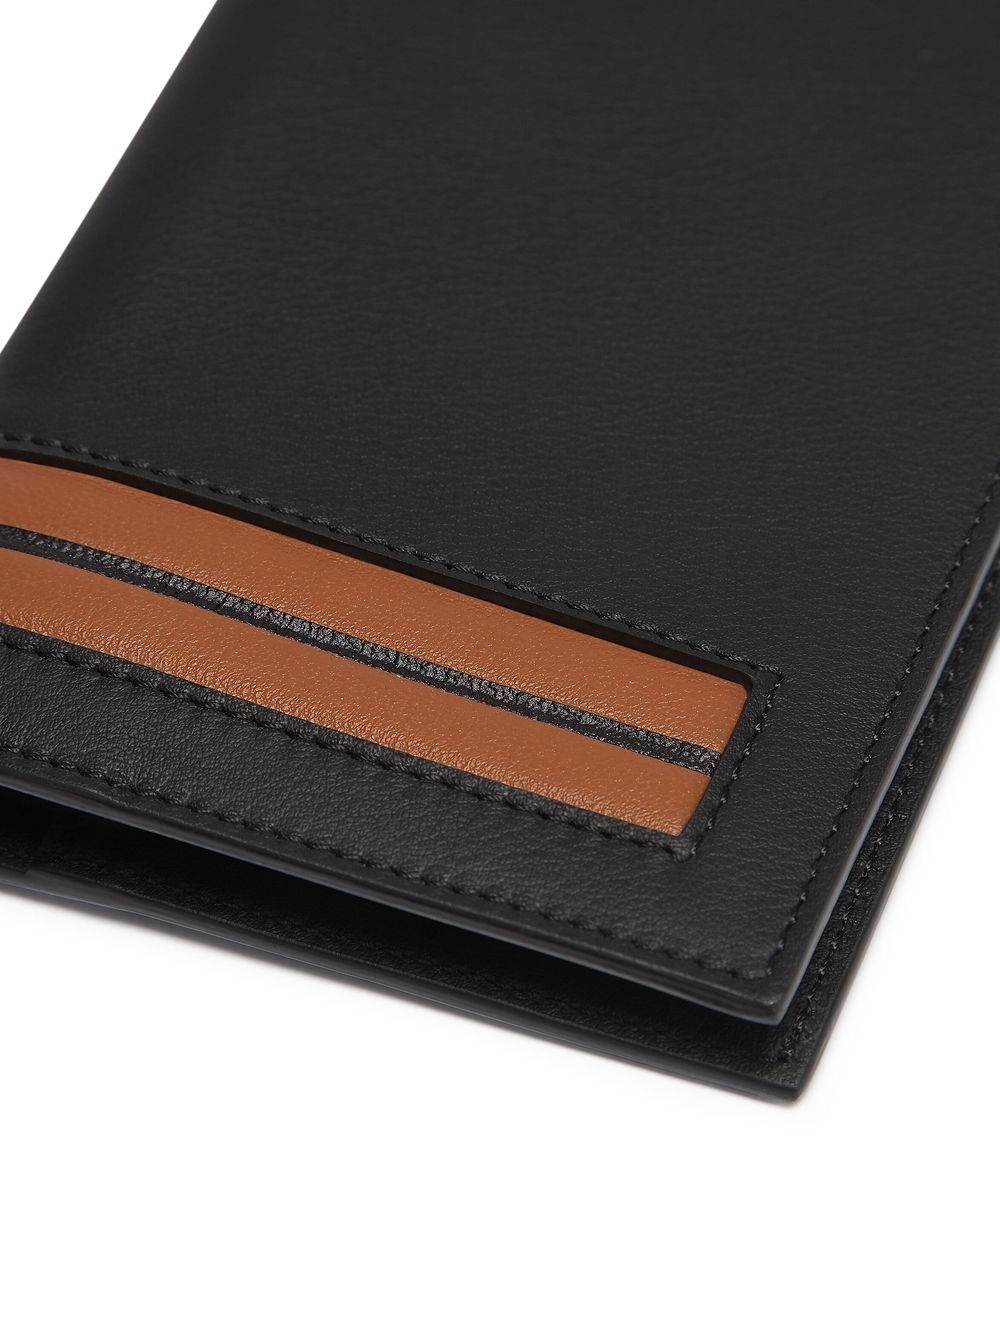 stripe-detail leather passport case - 3